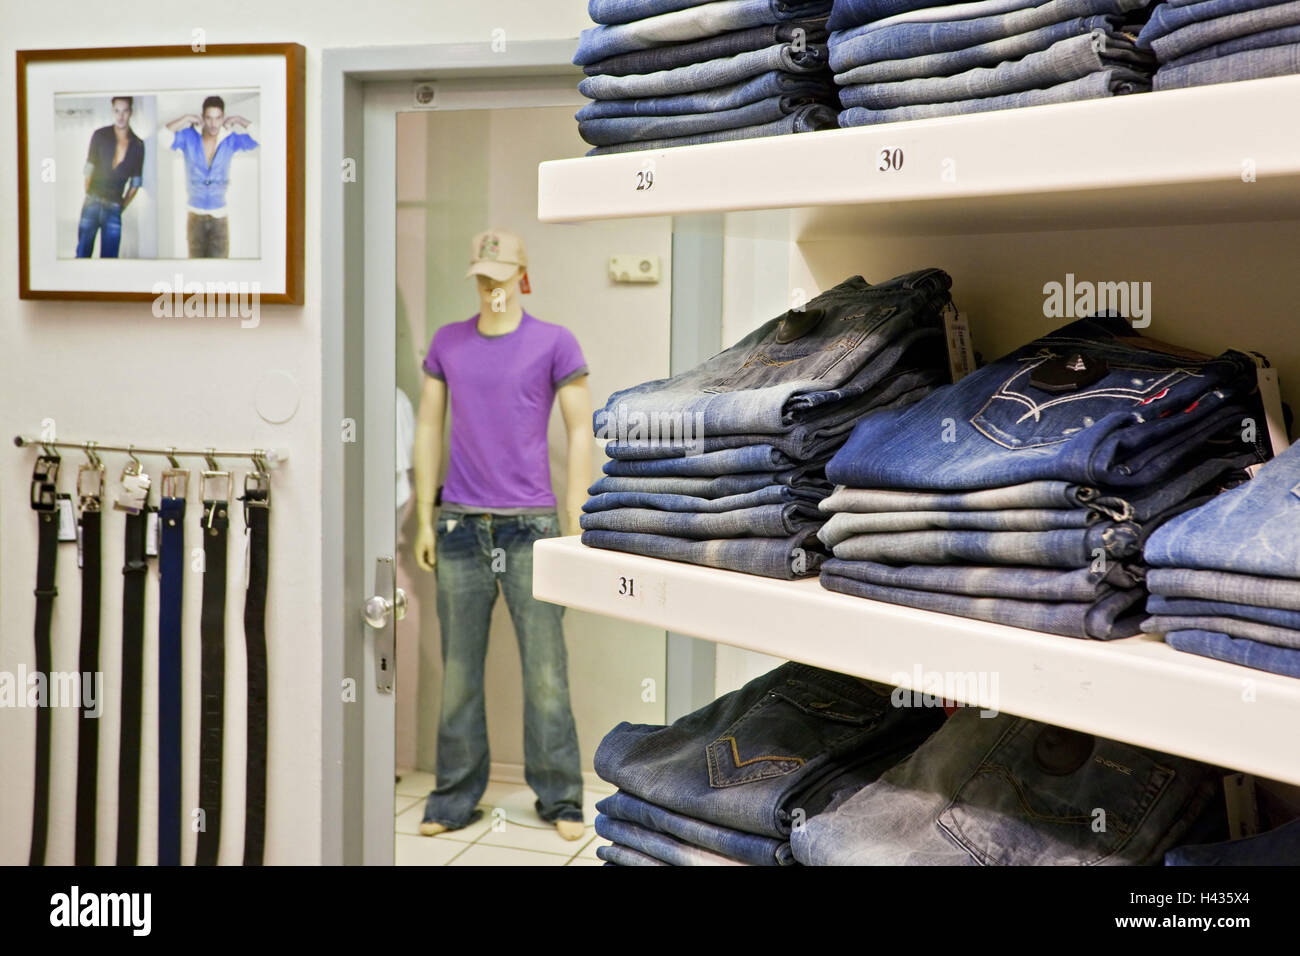 Austria, Upper Austria, Linz, boutique, jeans, Stock Photo